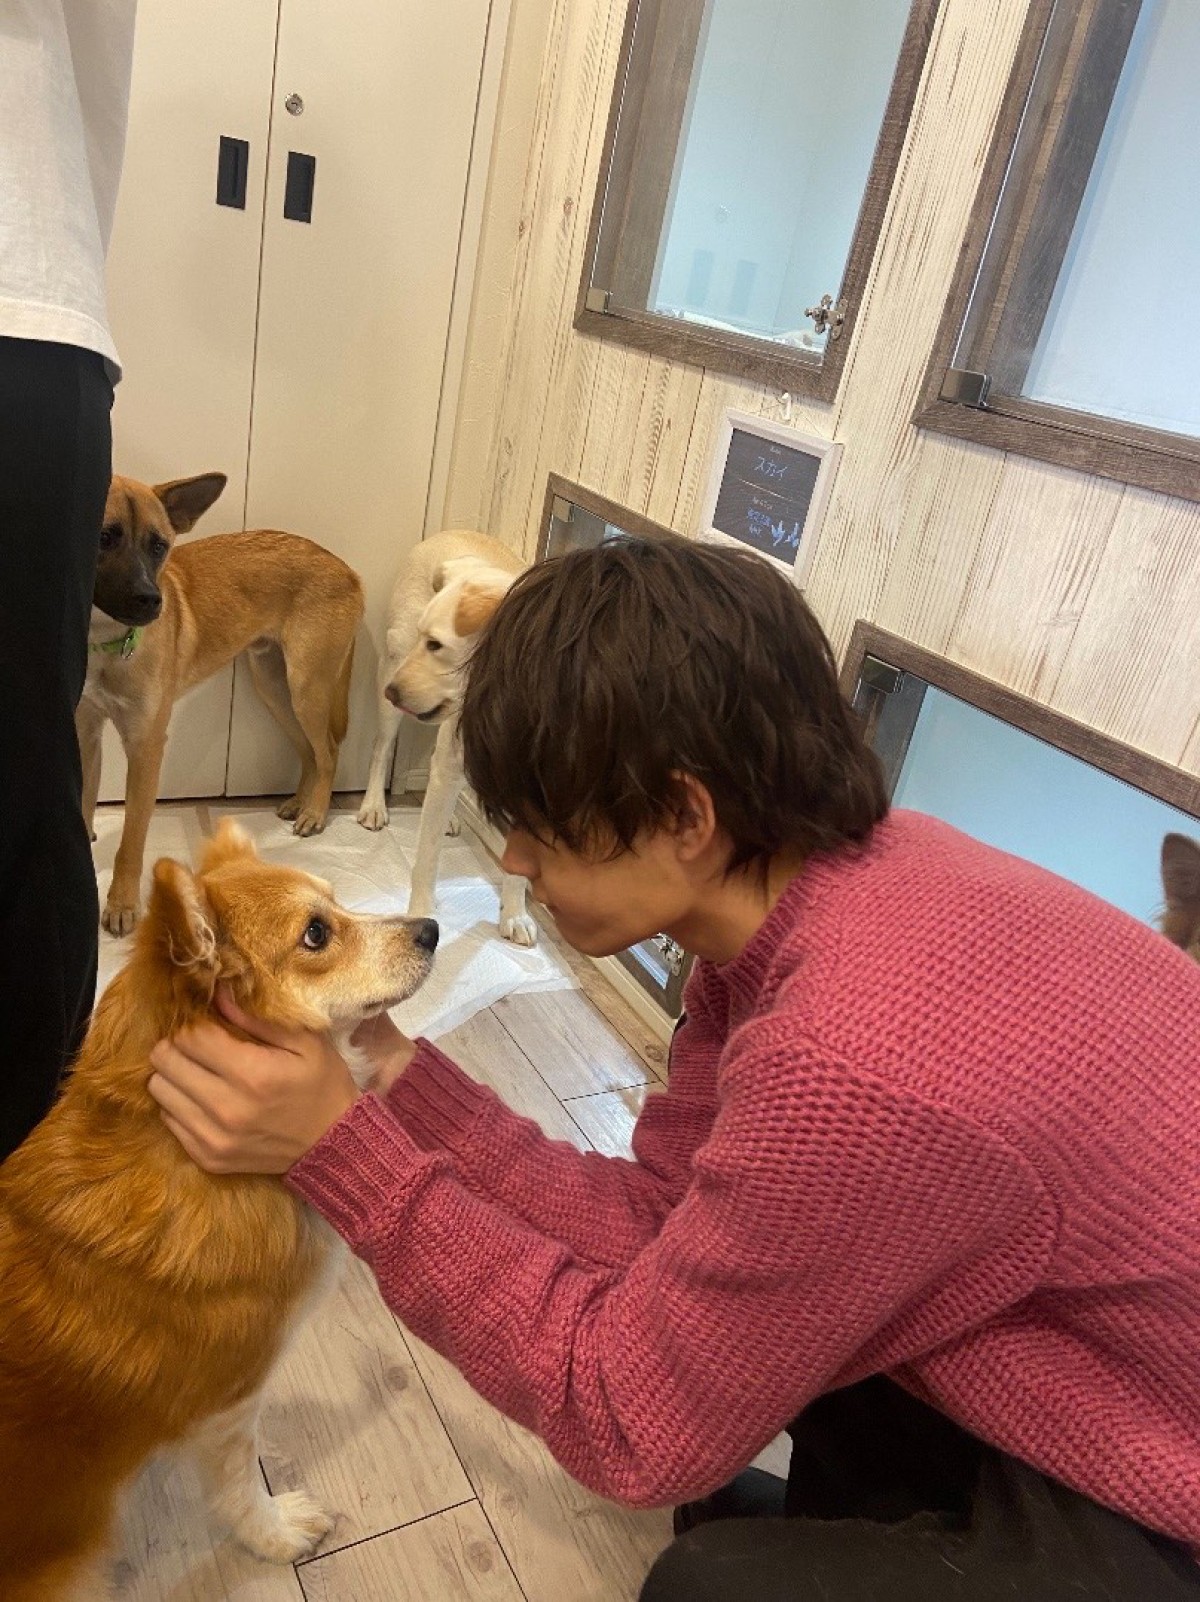 佐野勇斗、保護犬と10日間の共同生活　“預かりボランティア”に挑戦